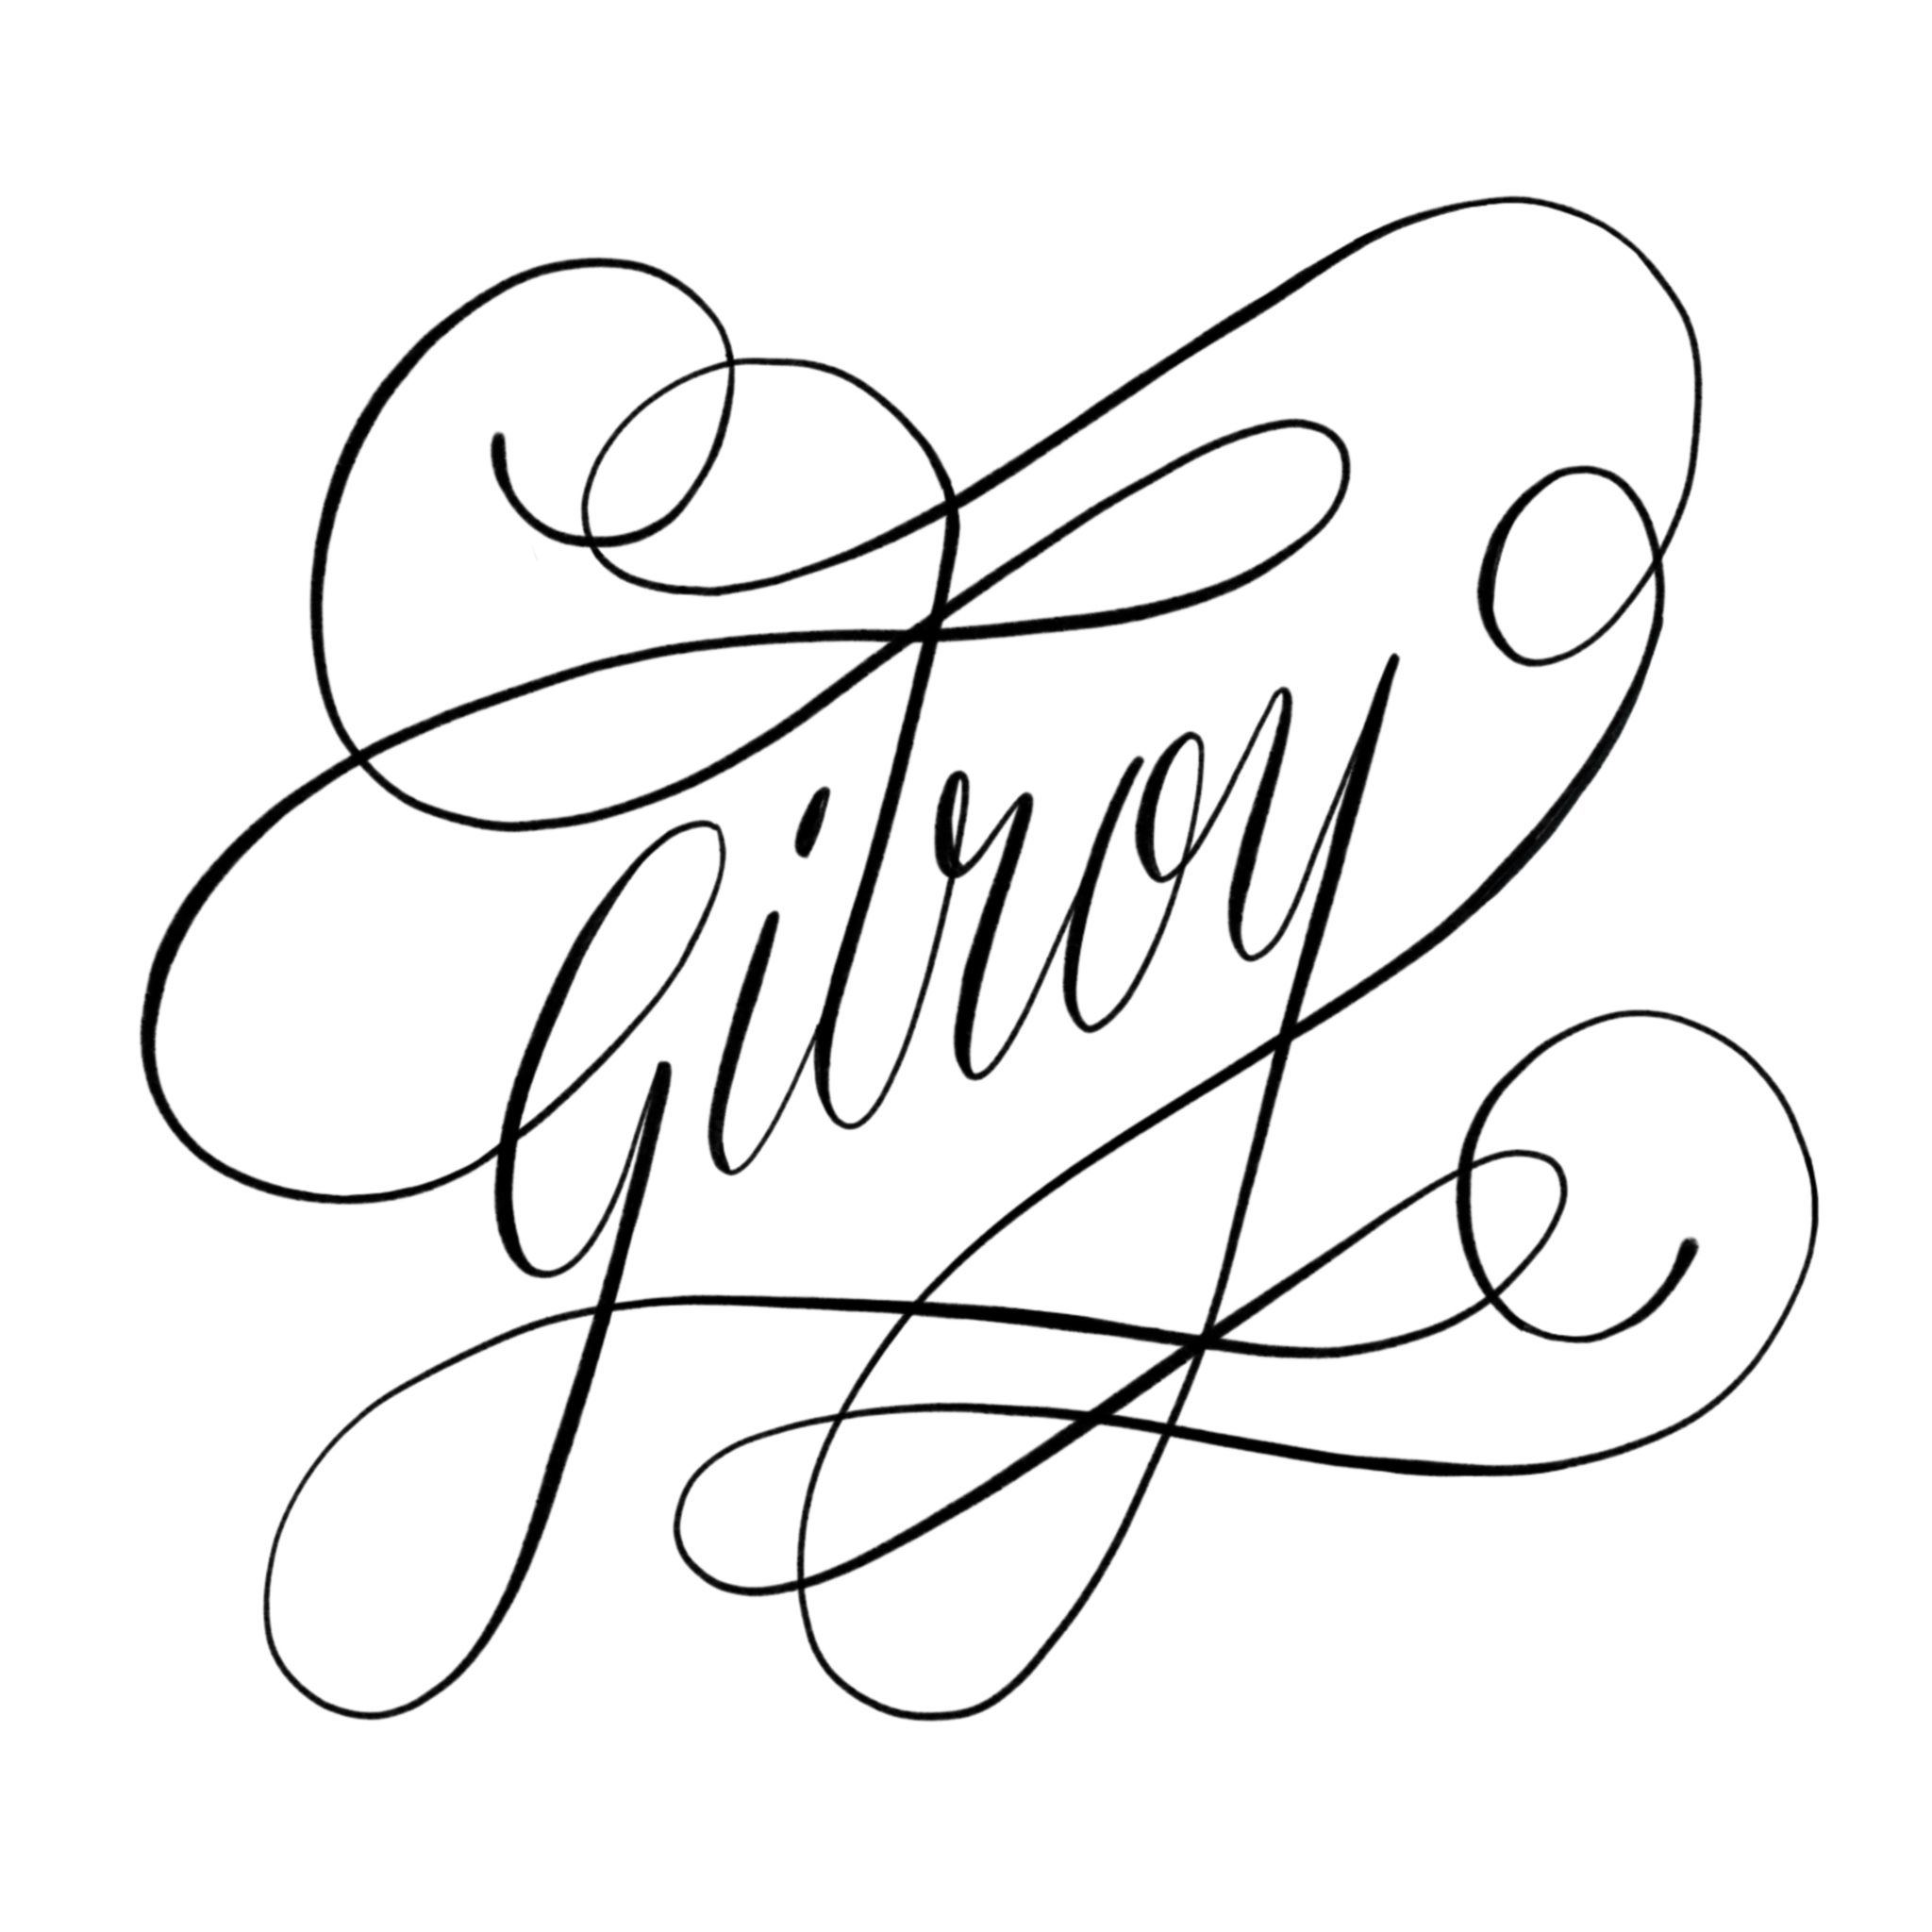 Gilroy-2